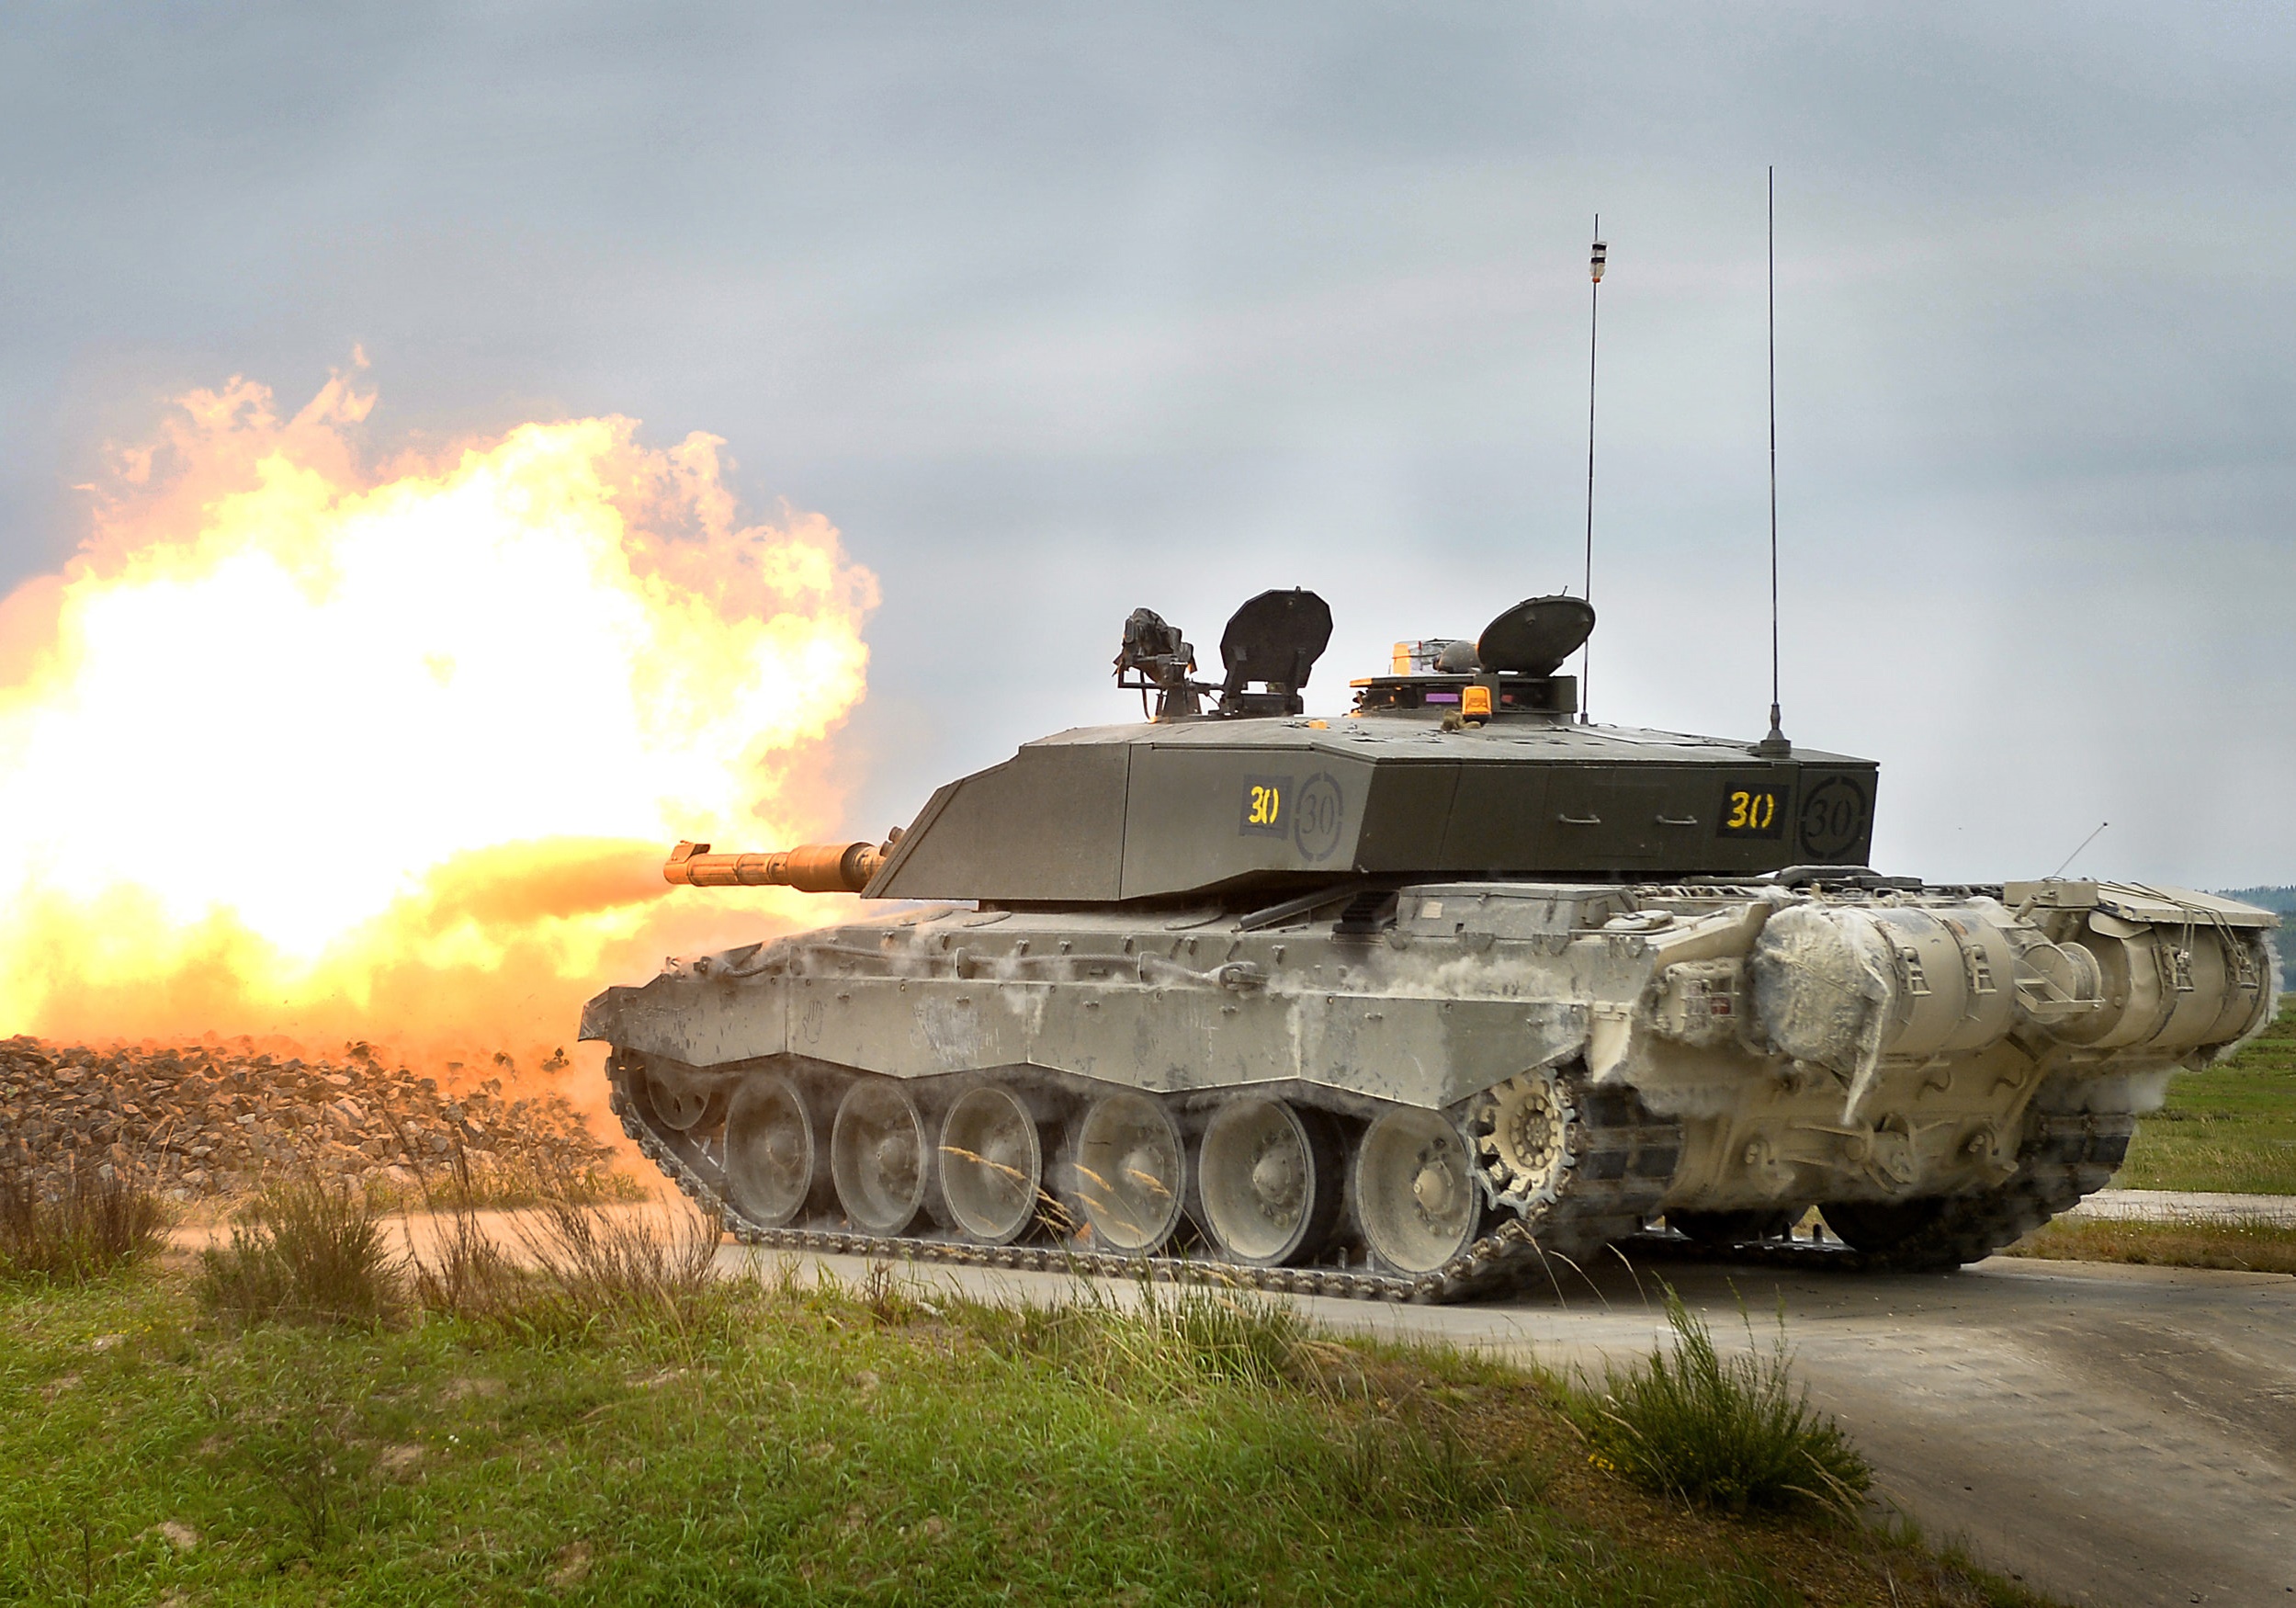 Hiện nay, xe tăng chiến đấu Challenger 2 đang được sử dụng trong quân đội Anh và Oman 